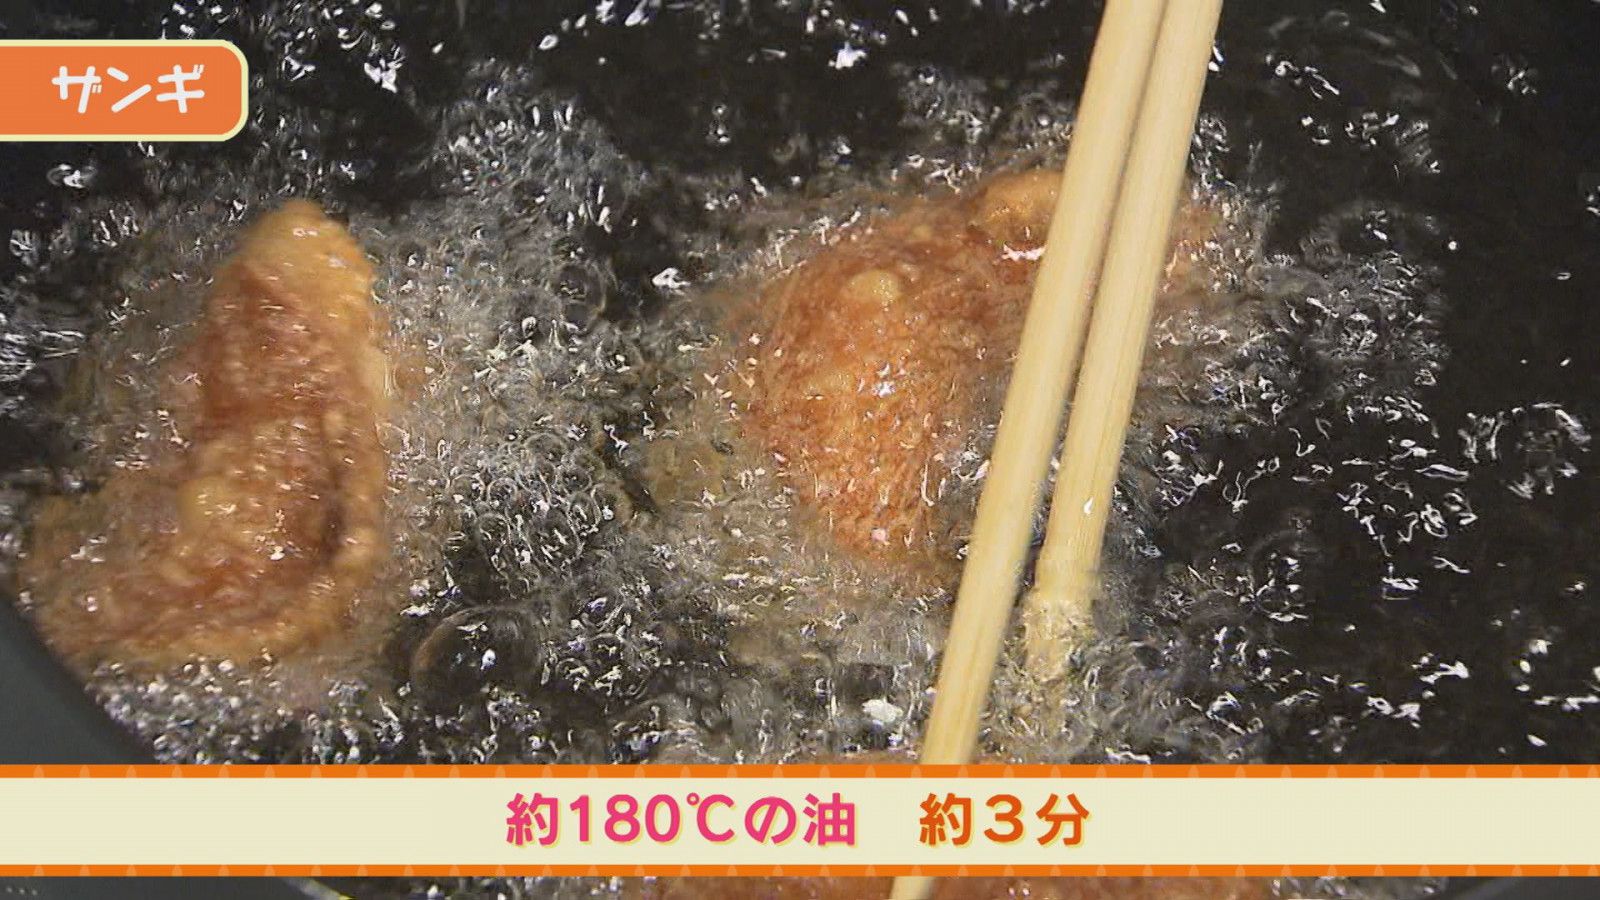 プロ直伝レシピ 札幌の人気店の味をご家庭で 布袋 のザンギ Sitakke したっけ